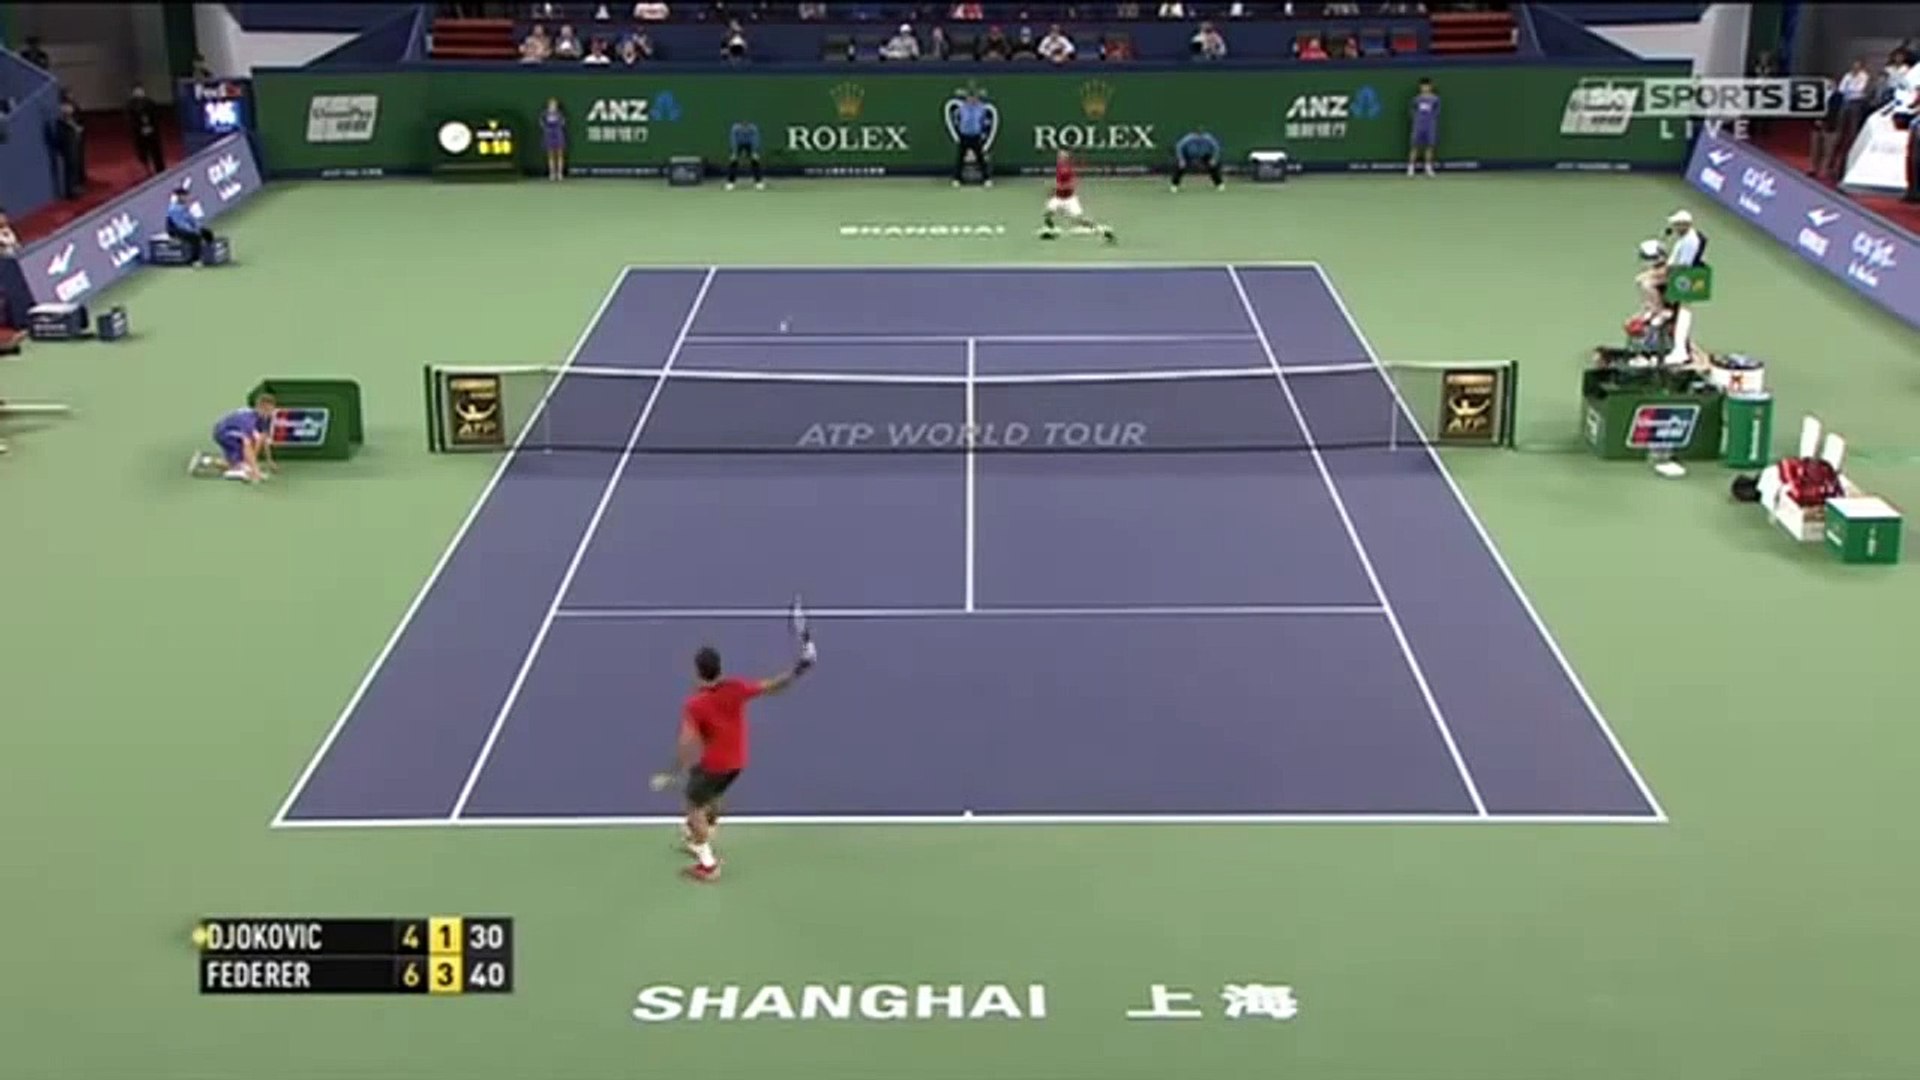 Shanghai Master 2014 Semifinal Roger Federer vs Novak Djokovic Highlights -  video Dailymotion